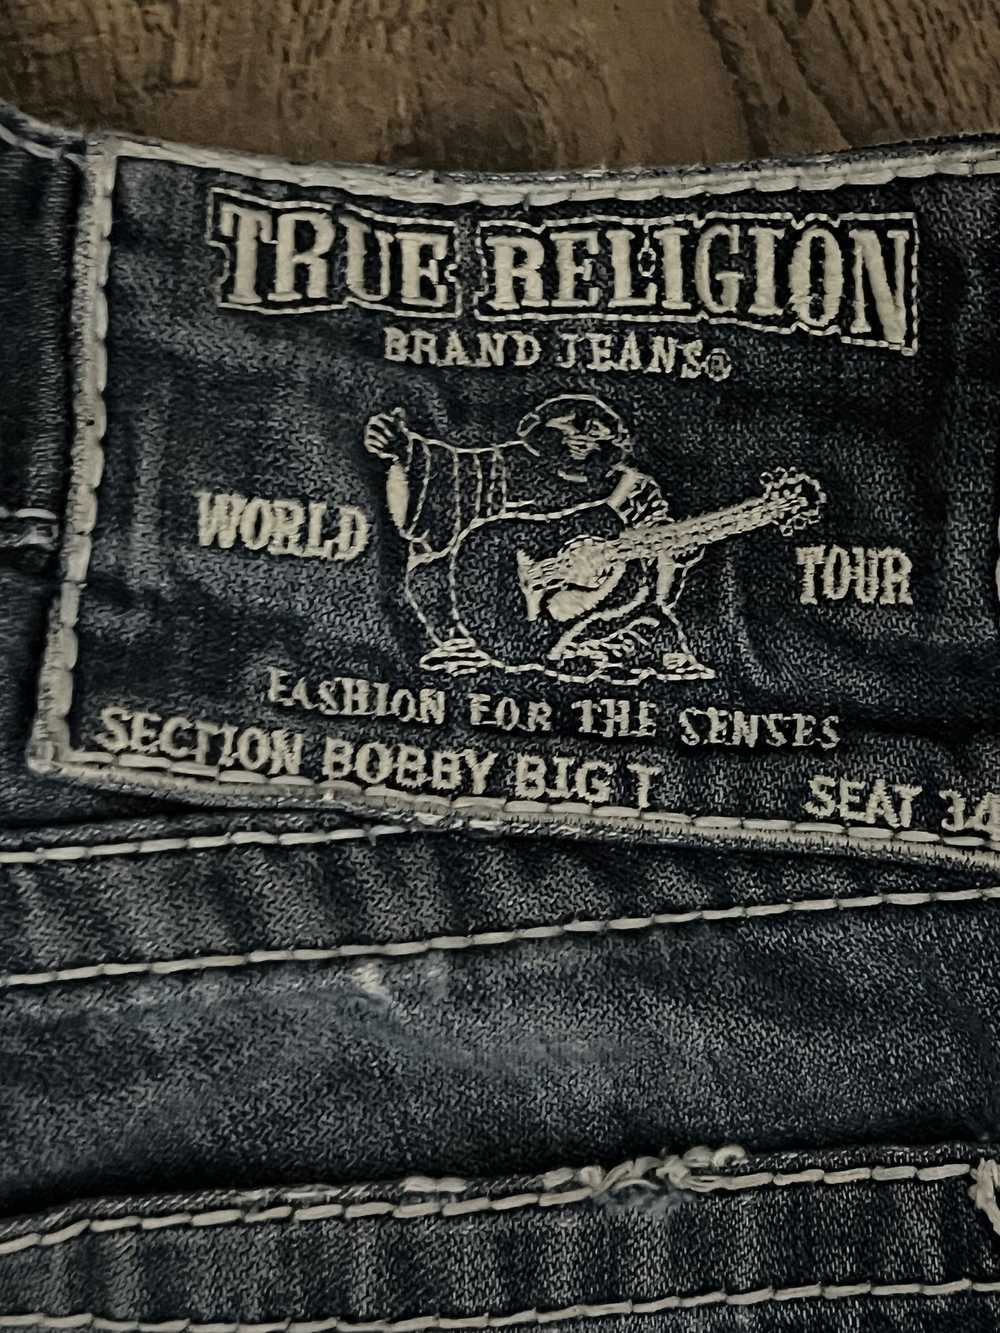 True Religion True religion Bobby big T - image 4